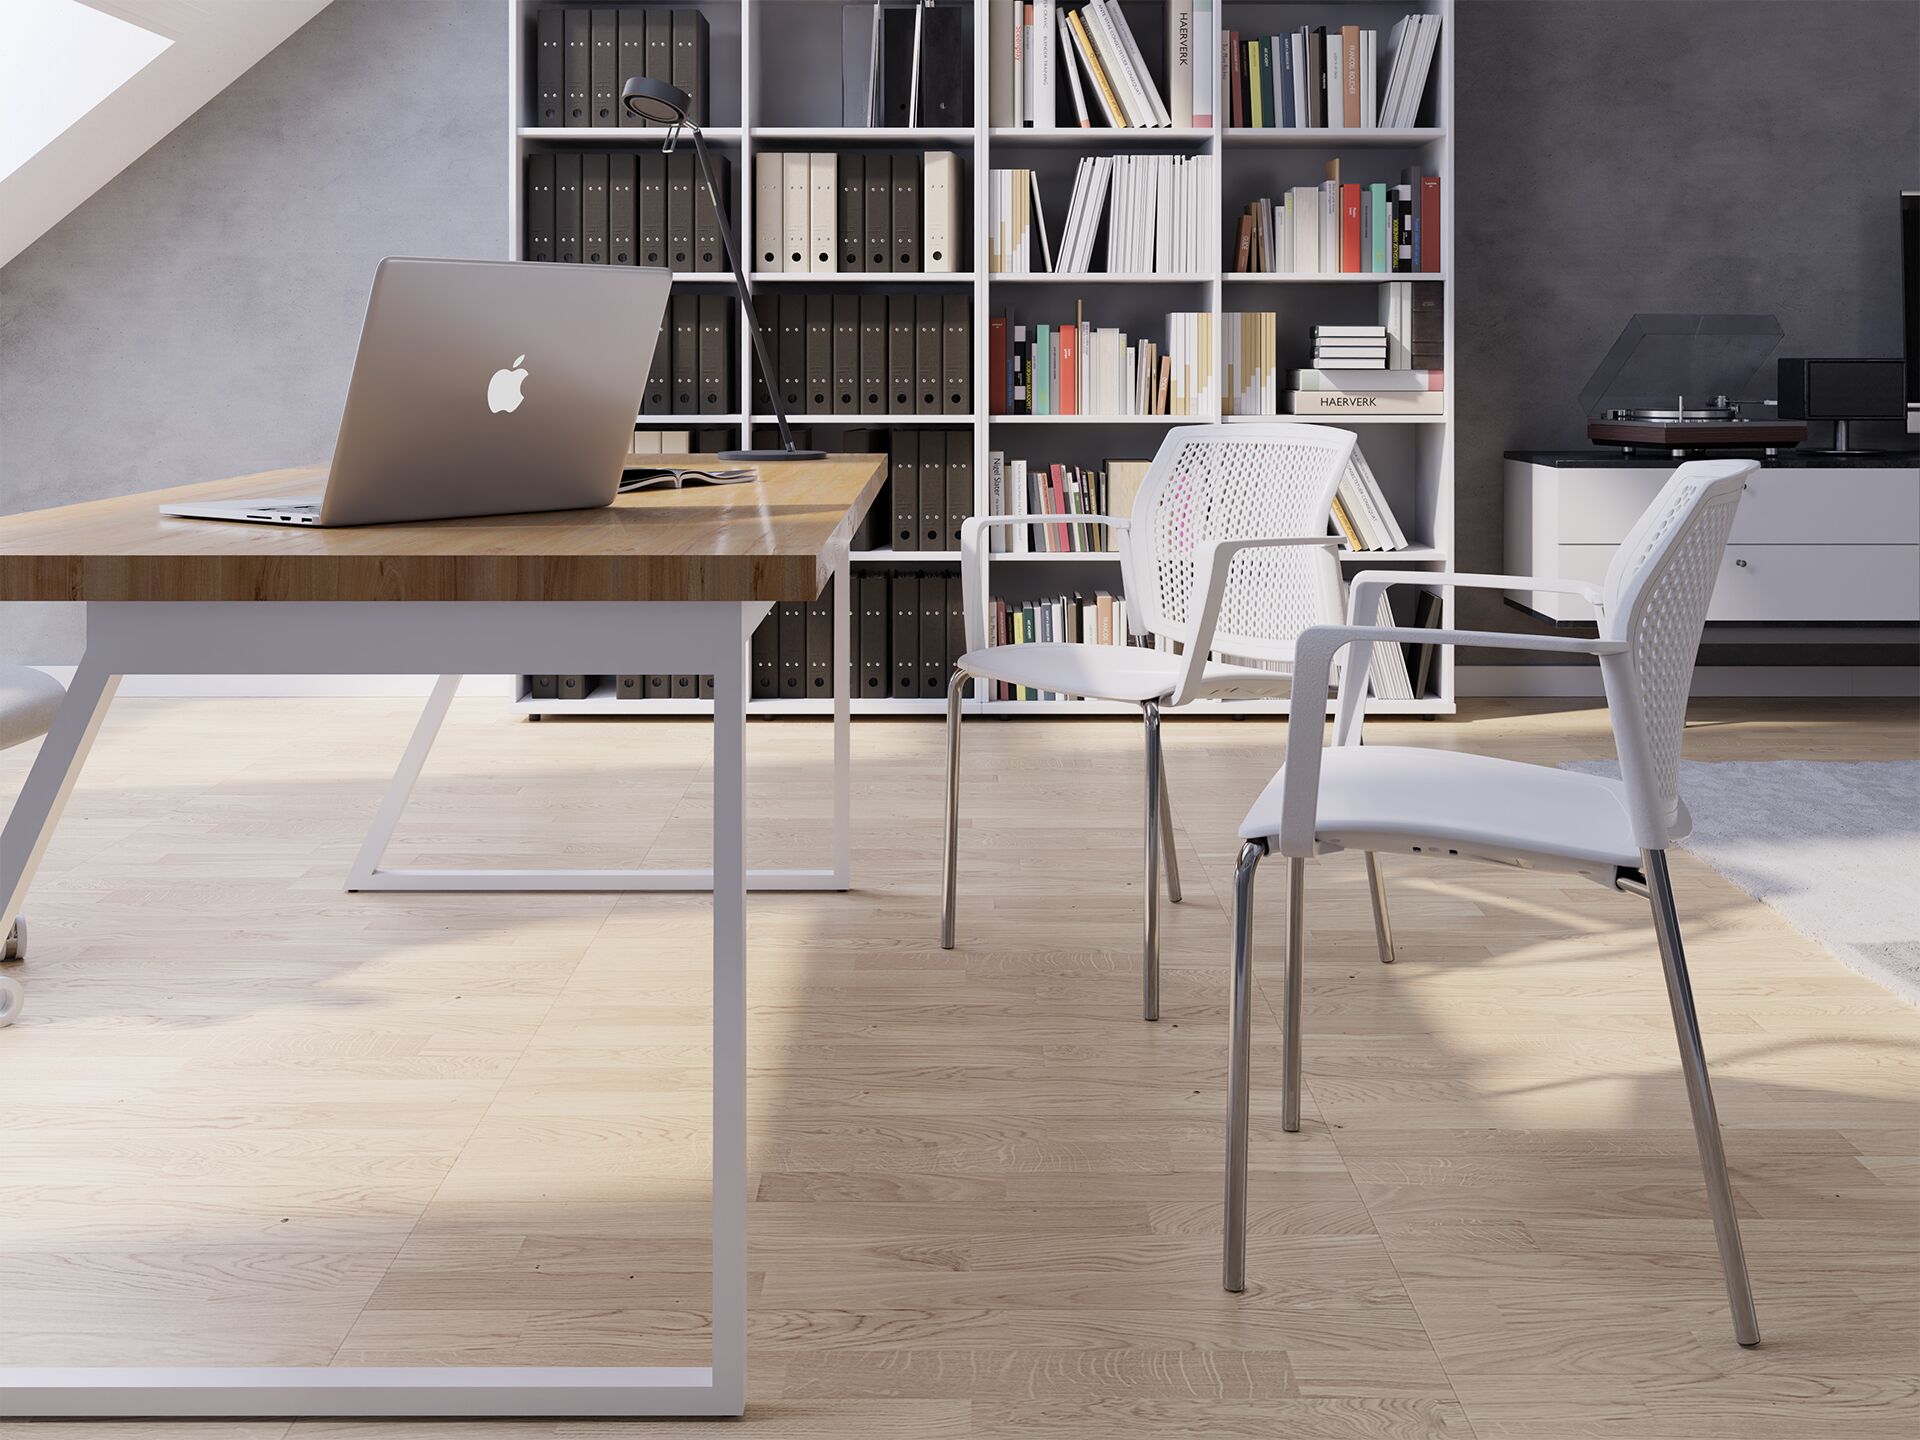 Dwa białe krzesła na drewnianej podłodze przy białym biurku na biurku na tle widać biblioteczkę